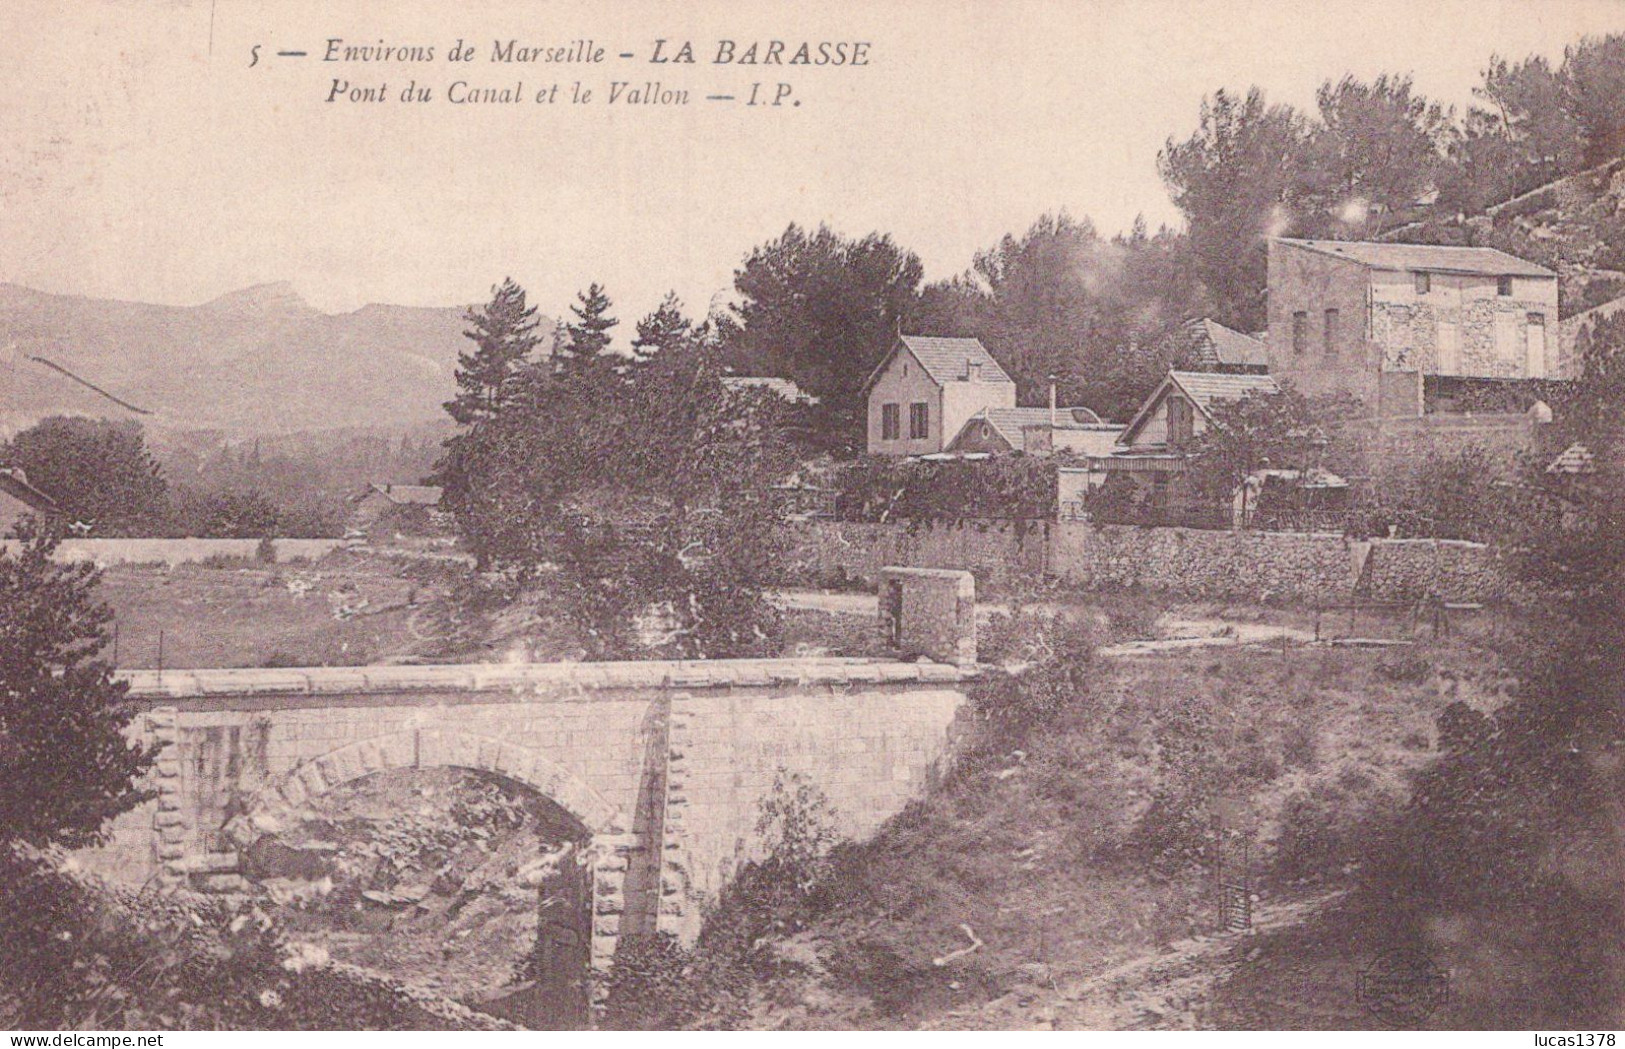 13 / MARSEILLE / LA BARASSE / PONT DU CANAL ET LE VALLON / IP 5 - Saint Marcel, La Barasse, Saint Menet